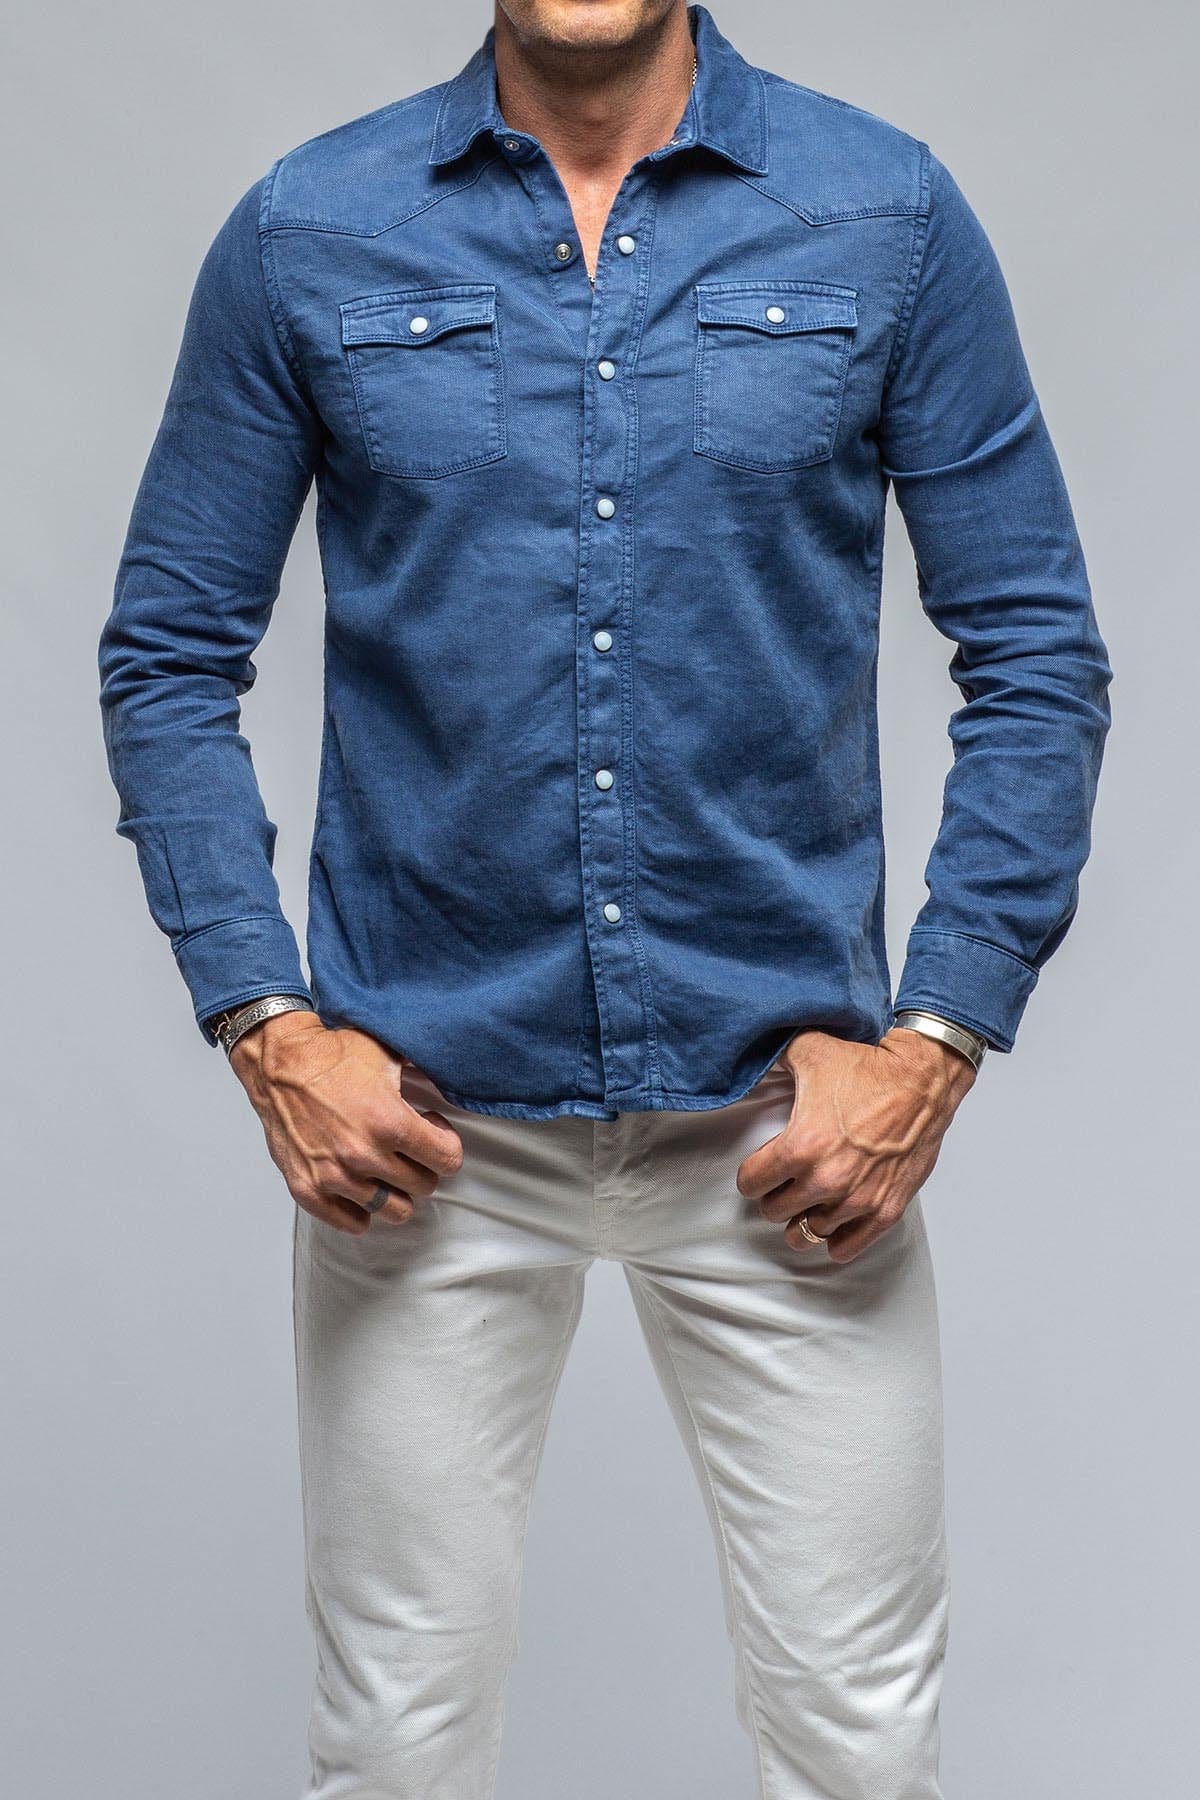 Buy VOXATI Maroon Full Sleeves Shirt Collar Denim Jacket for Men's Online @  Tata CLiQ